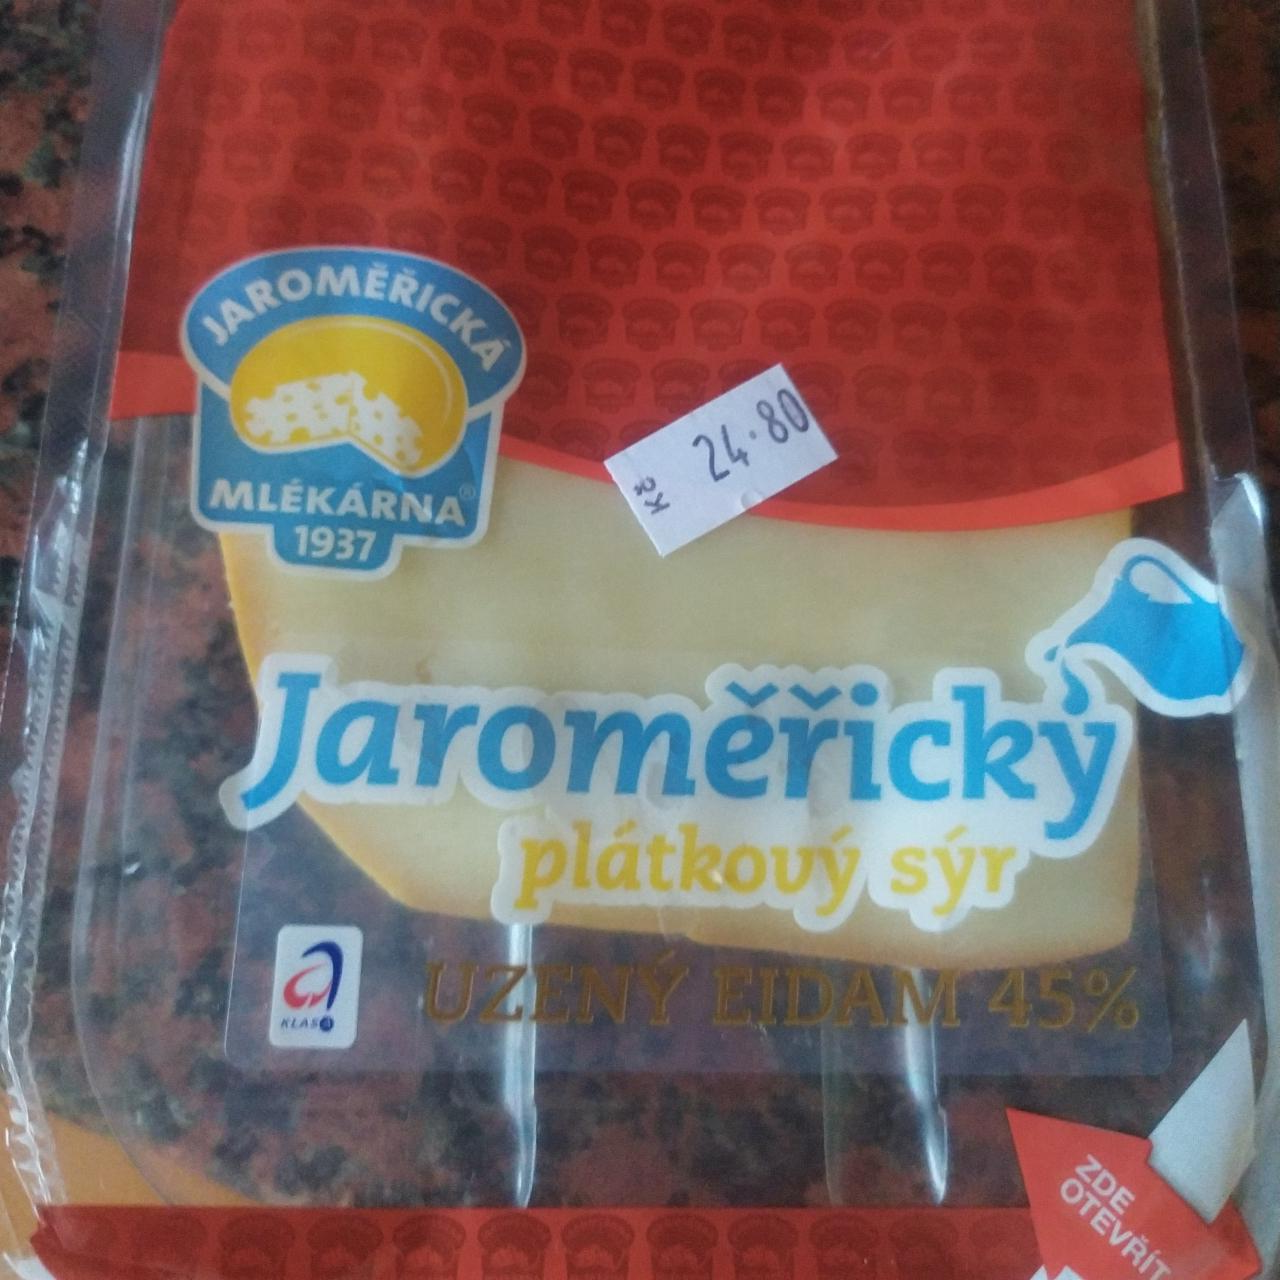 Fotografie - Jaroměřický plátkový sýr uzený eidam 45%